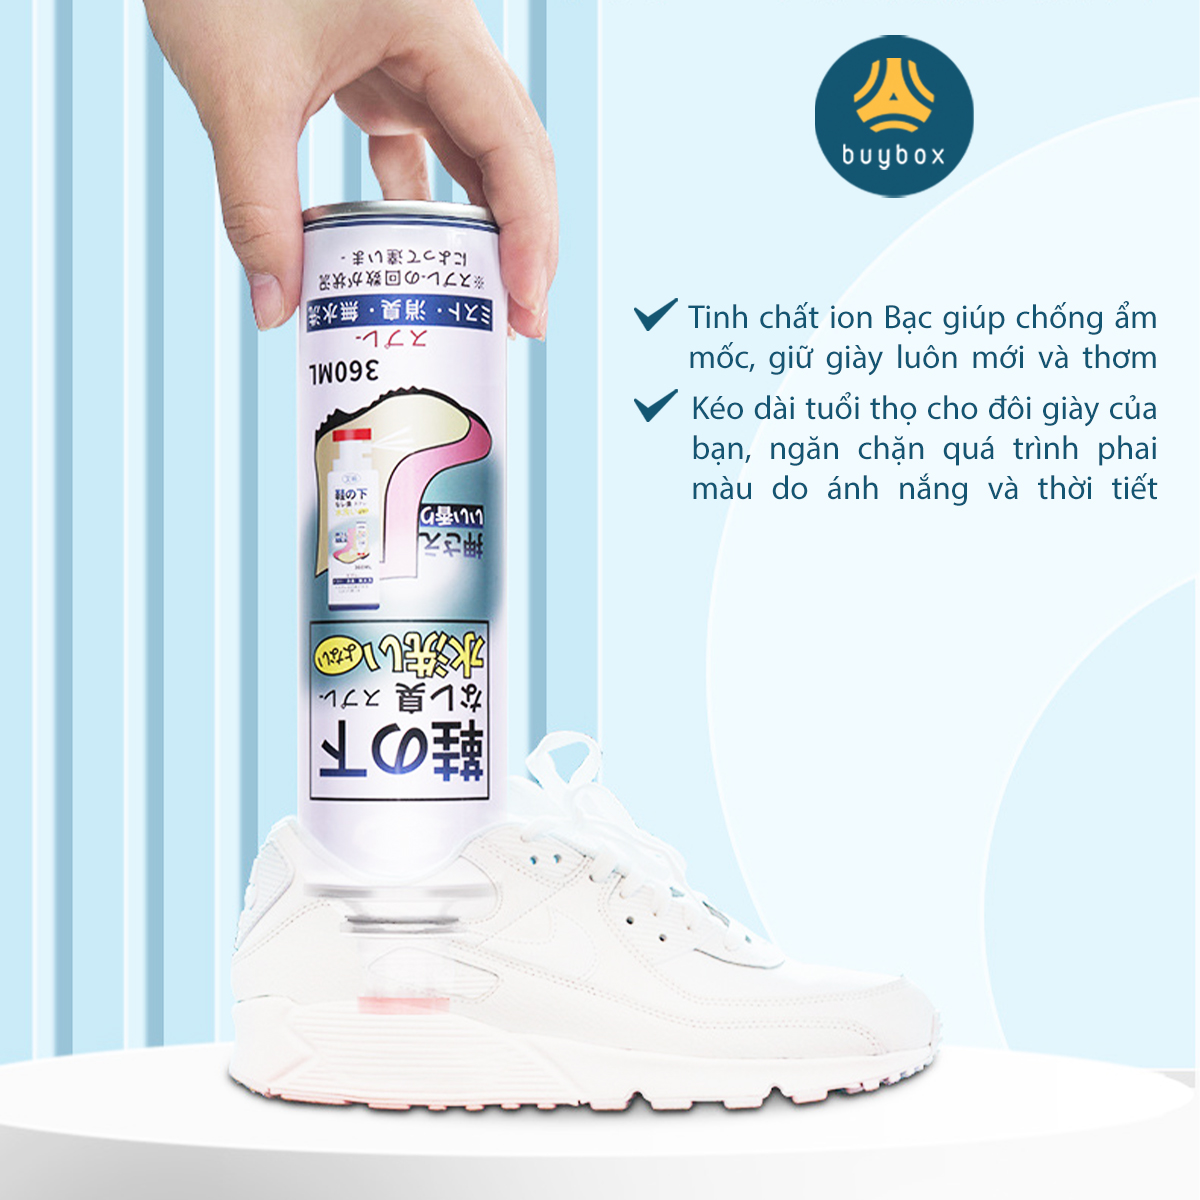 Bình xịt ngăn ngừa mồ hôi, vi khuẩn cho đôi giày của bạn, hương thơm mát - BuyBox - BBPK358